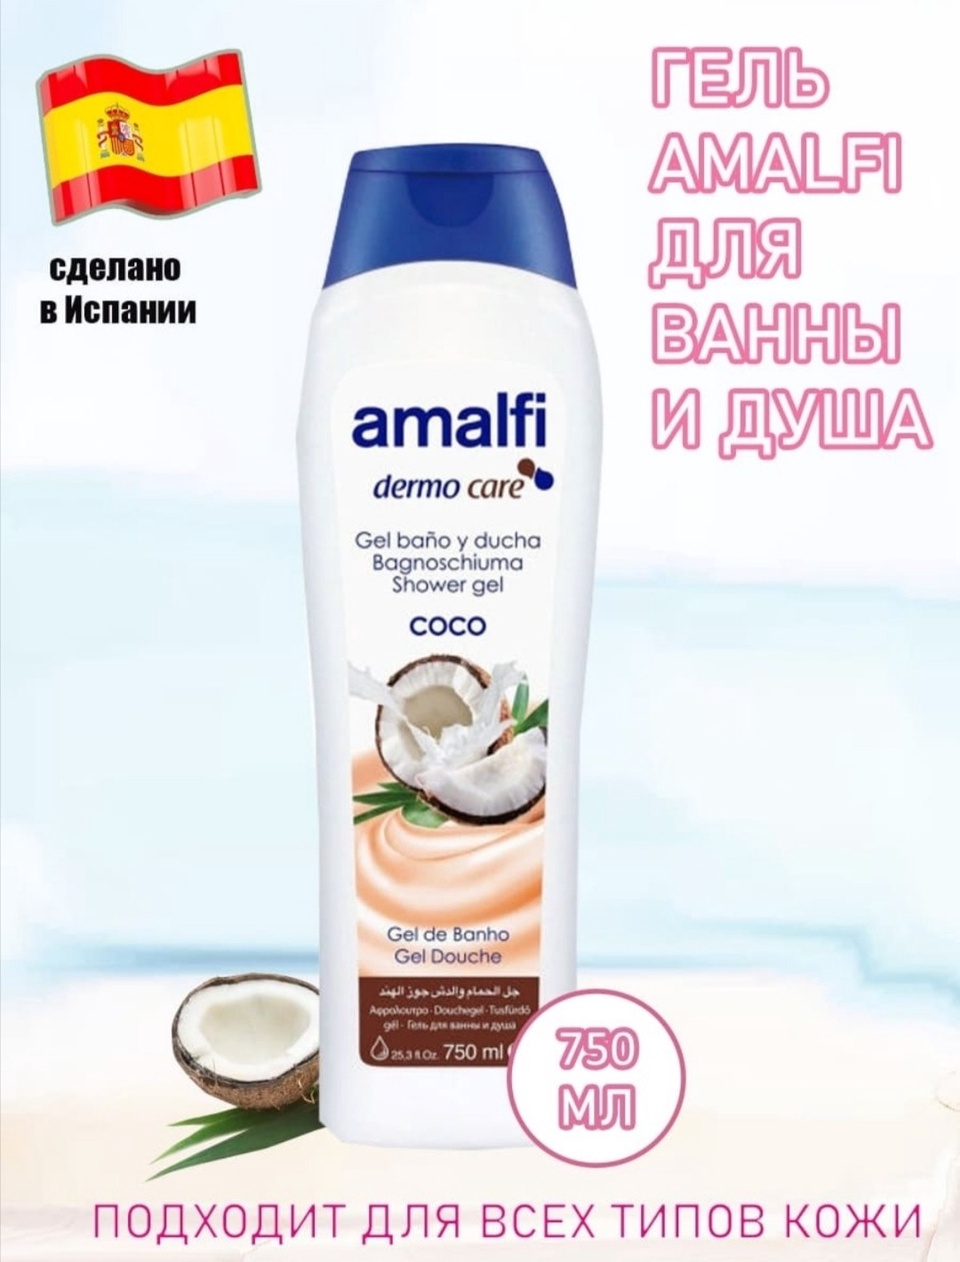 Amalfi гель для ванны и душа - 400 ₽, заказать онлайн.